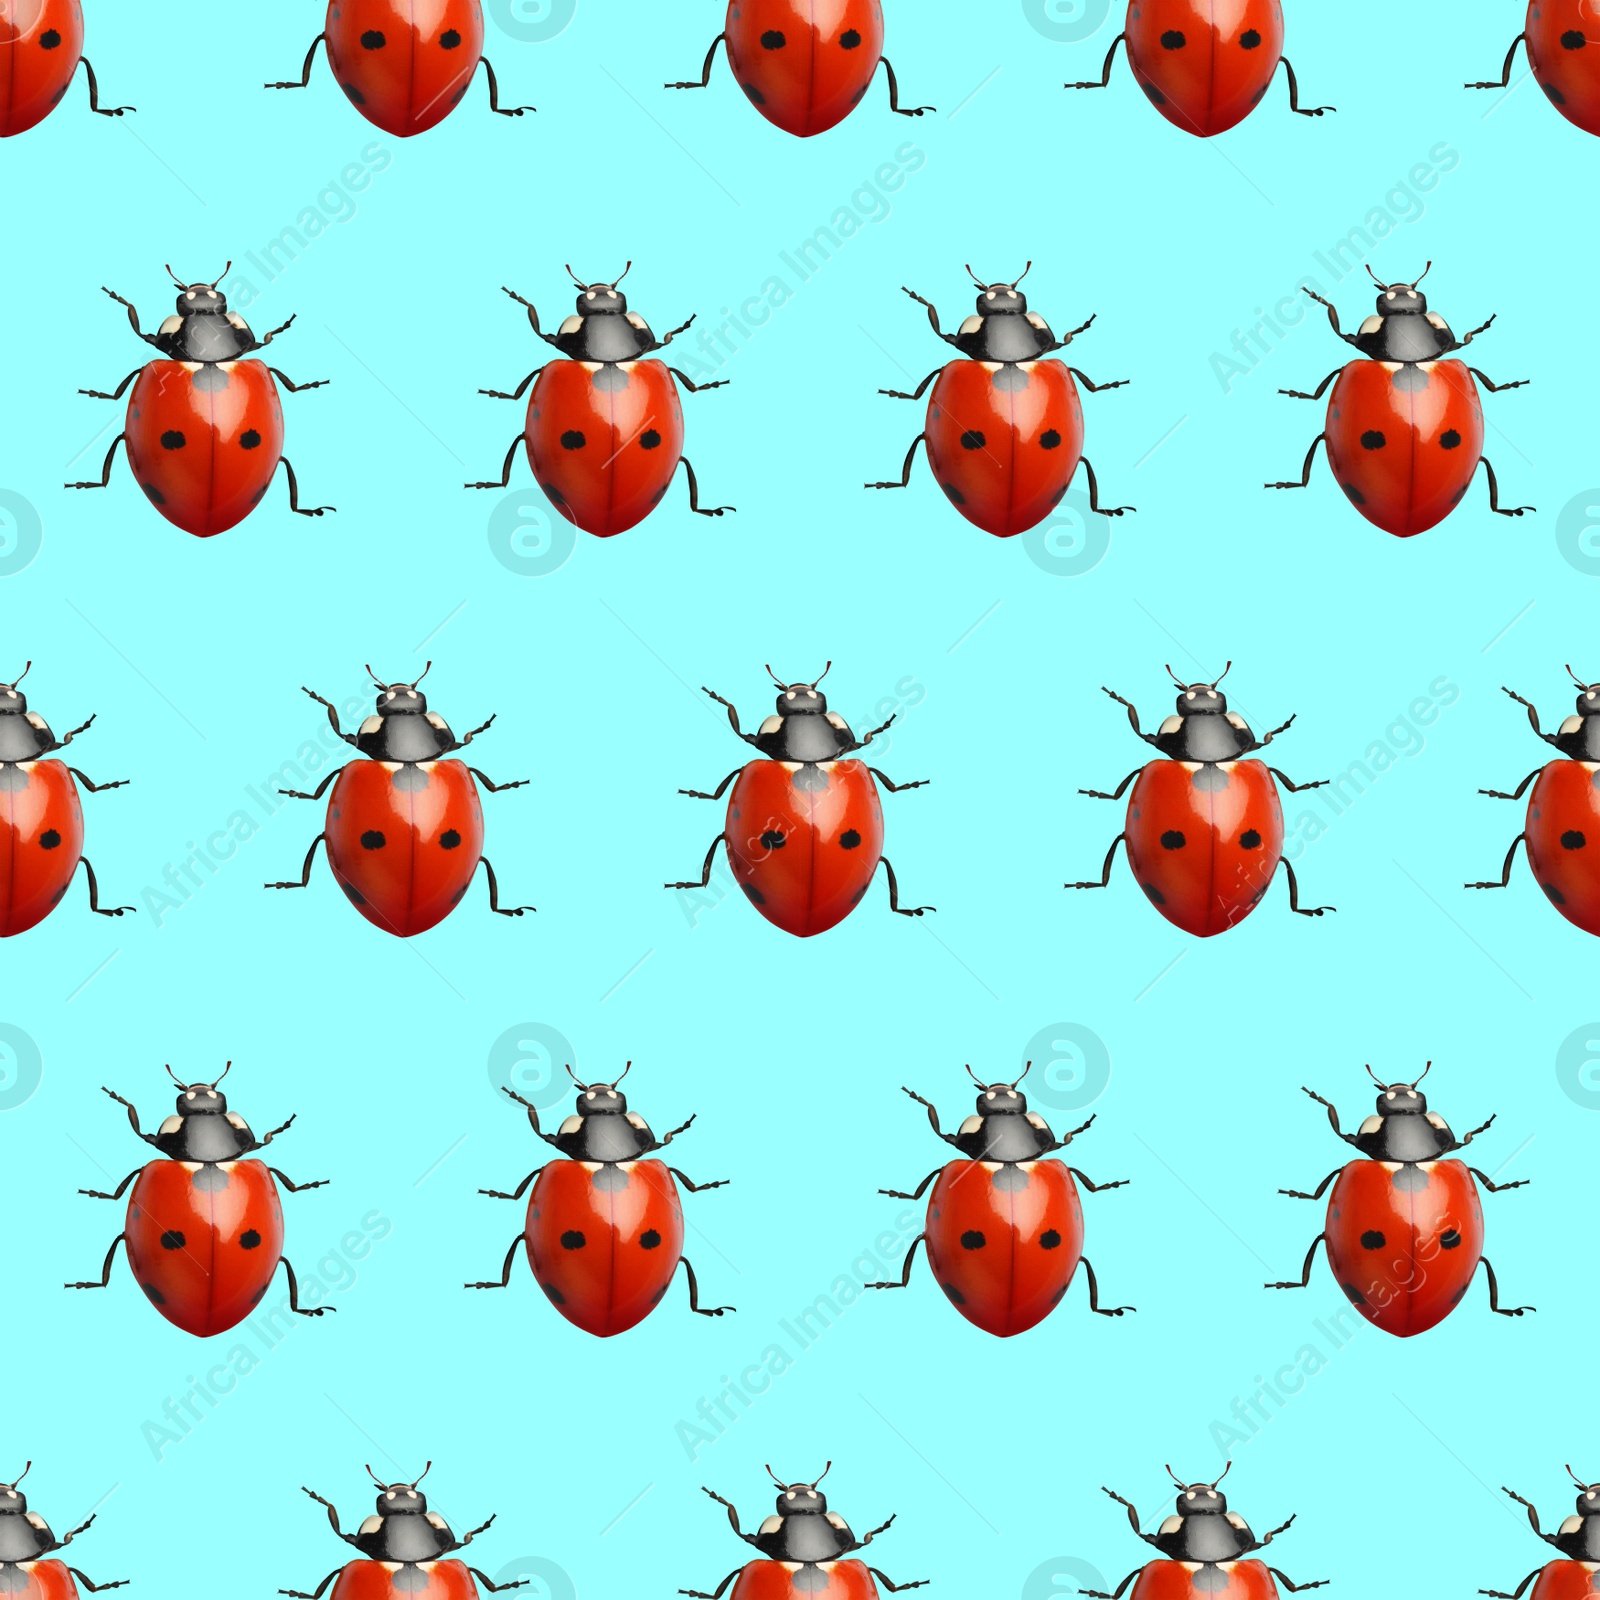 Image of Many red ladybugs on turquoise background, flat lay 